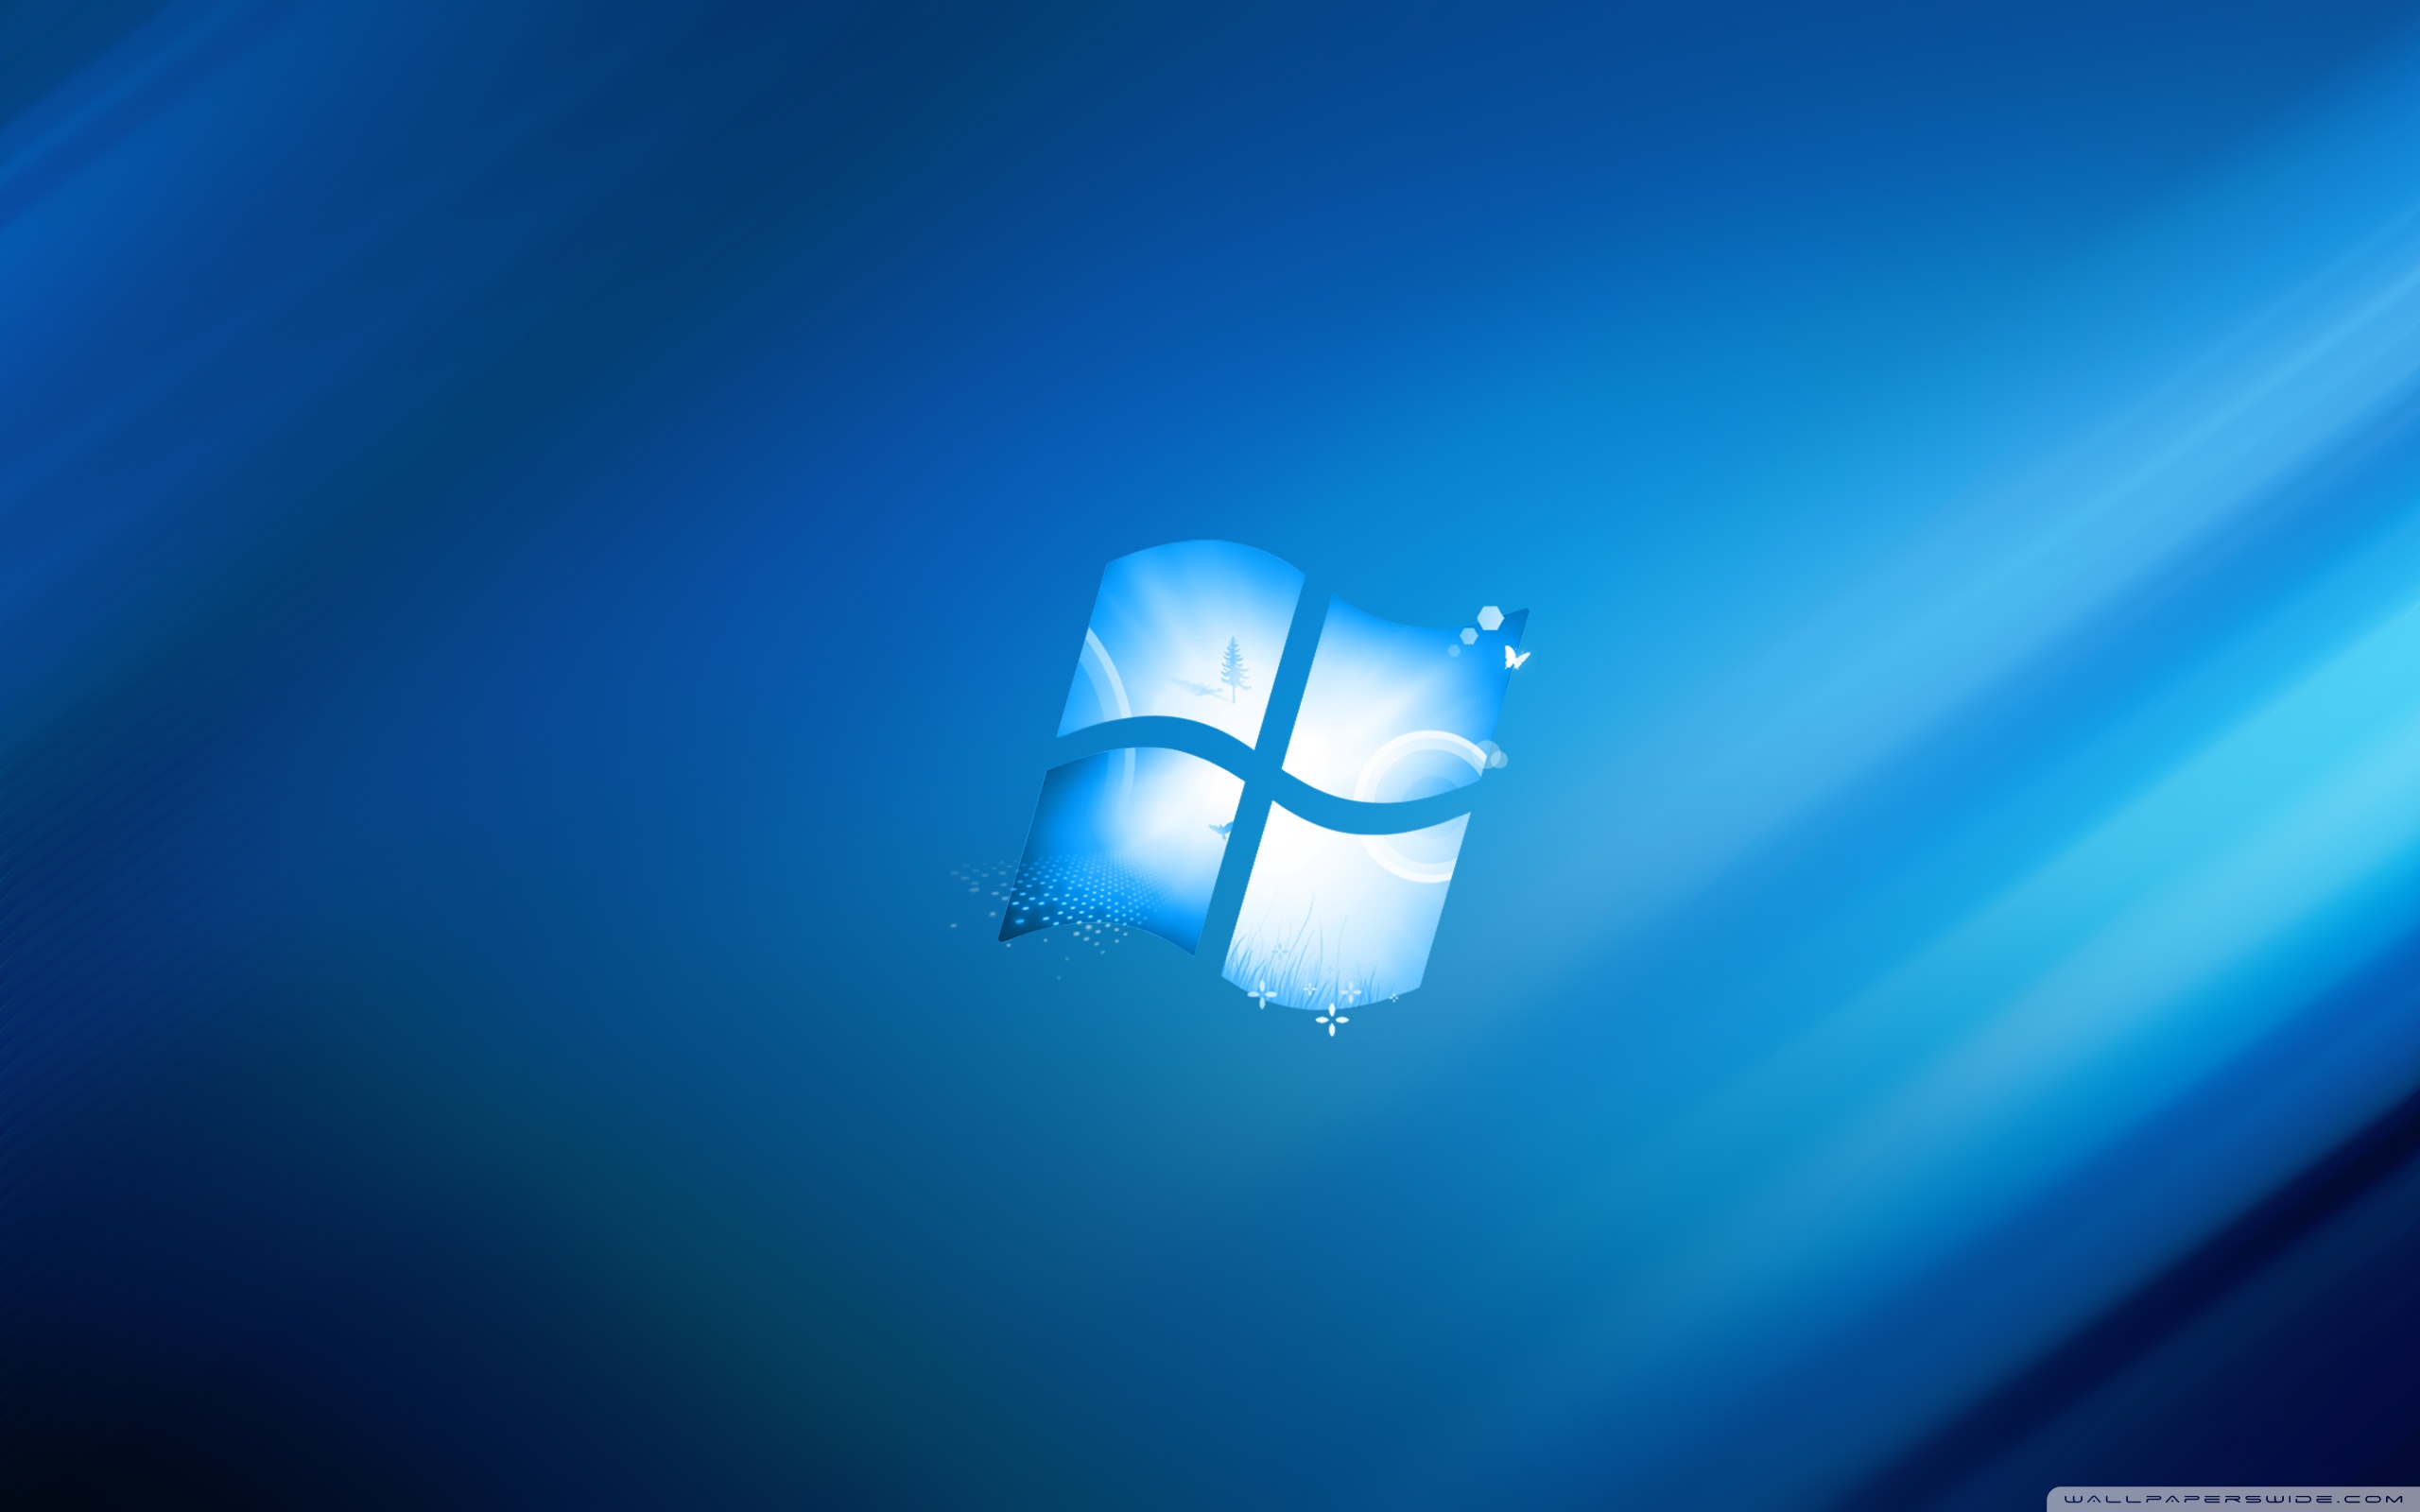 Cập nhật ngay hình nền Windows 8.1 độ phân giải 2560x1600 miễn phí để trang trí cho máy tính của bạn thêm hấp dẫn và chuyên nghiệp. Hãy tải xuống ngay để trải nghiệm chất lượng hình ảnh tốt nhất và tìm thấy đúng bức hình mà bạn thích.